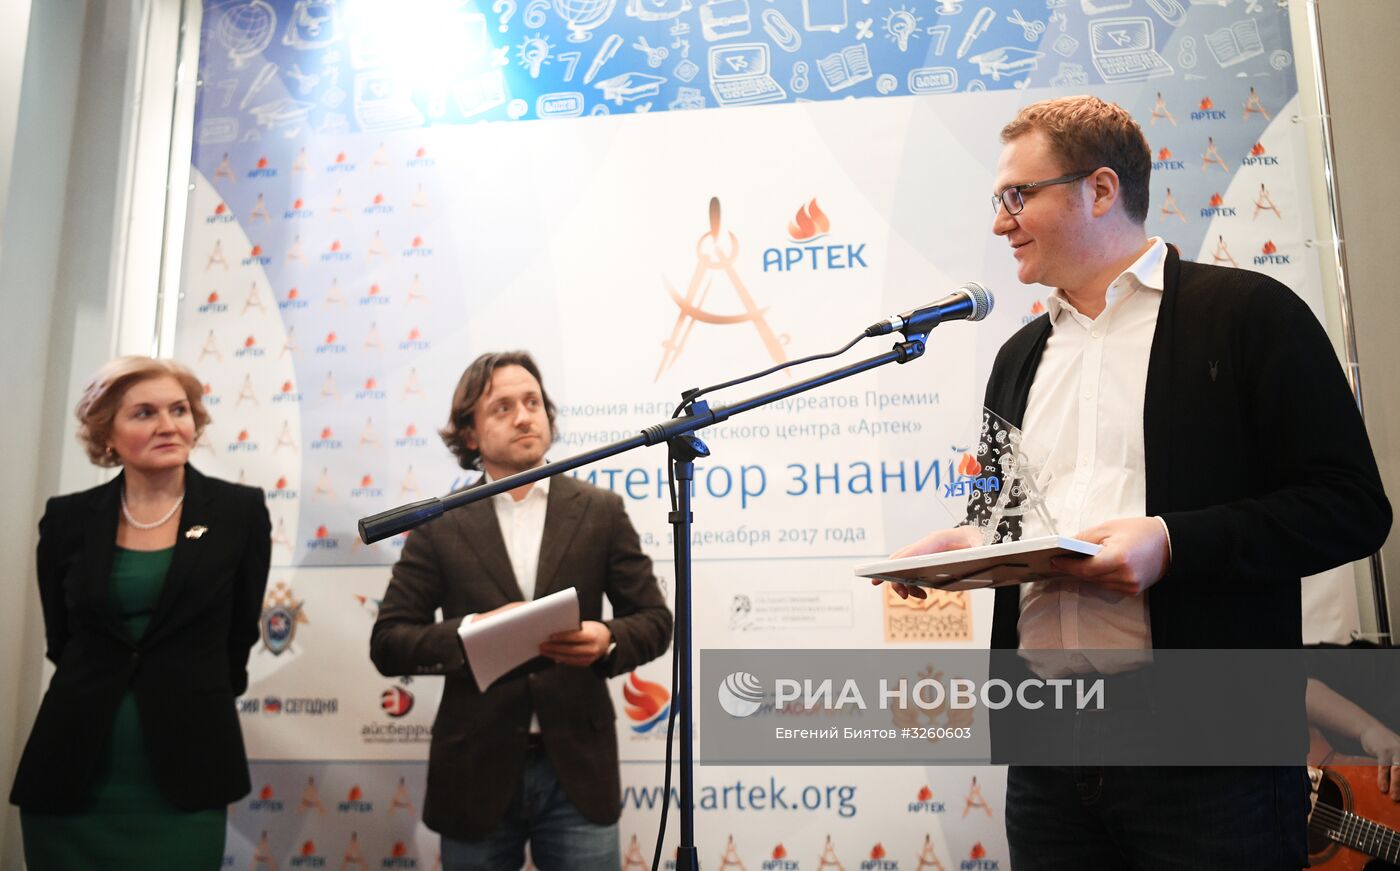 МИА "Россия сегодня" получило награду МДЦ "Артек" за лучший образовательный проект